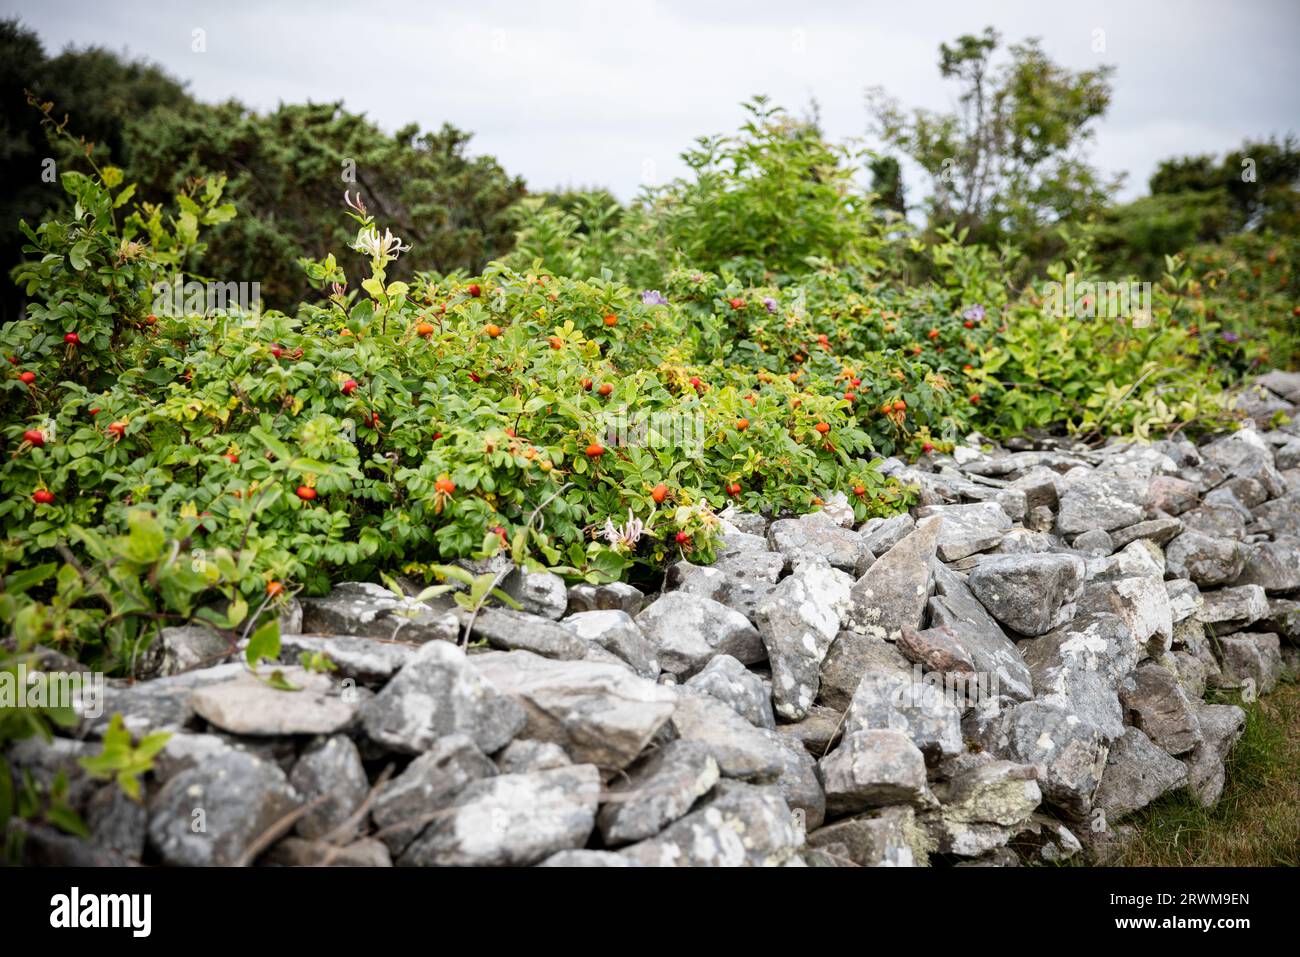 la bellezza naturale dei fianchi di rose selvatiche che prosperano lungo un muro di pietra. Il muro di pietra, in sfumature di grigio, fornisce uno sfondo affascinante per il verde lussureggiante Foto Stock